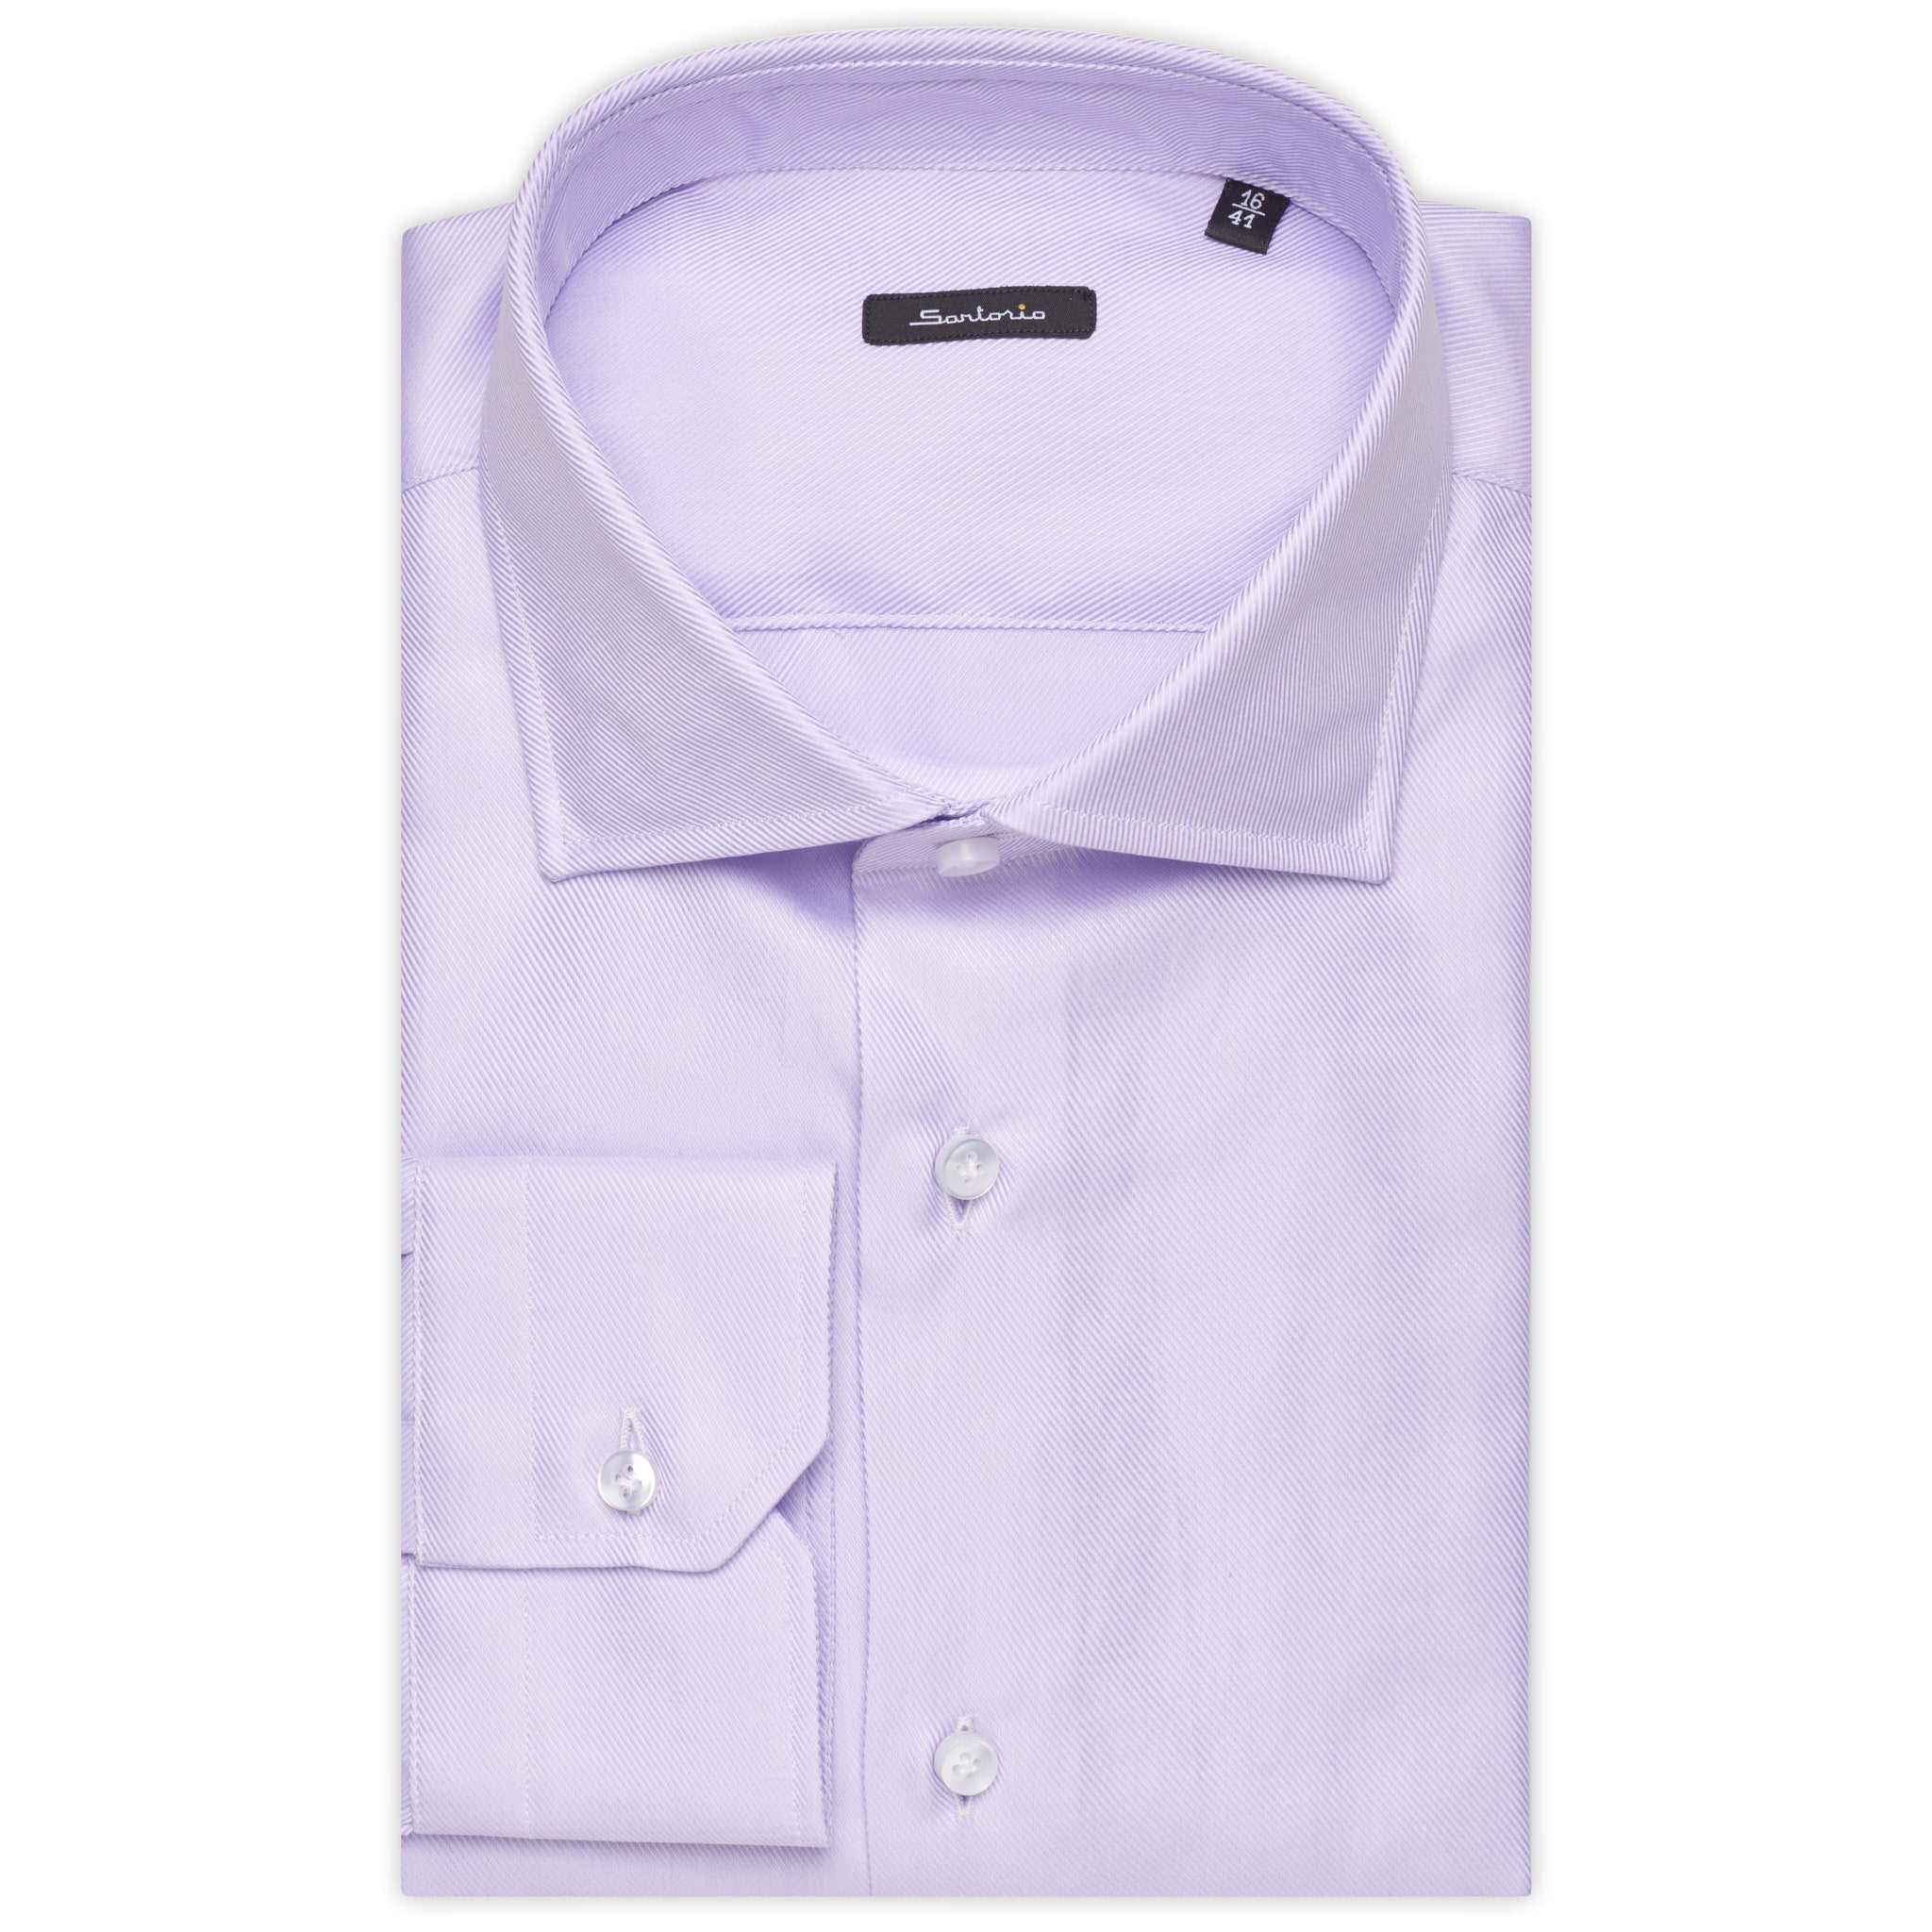 SARTORIO Napoli by KITON Light Purple Cotton Dress Shirt EU 42 NEW US 16.5 Slim Fit SARTORIO